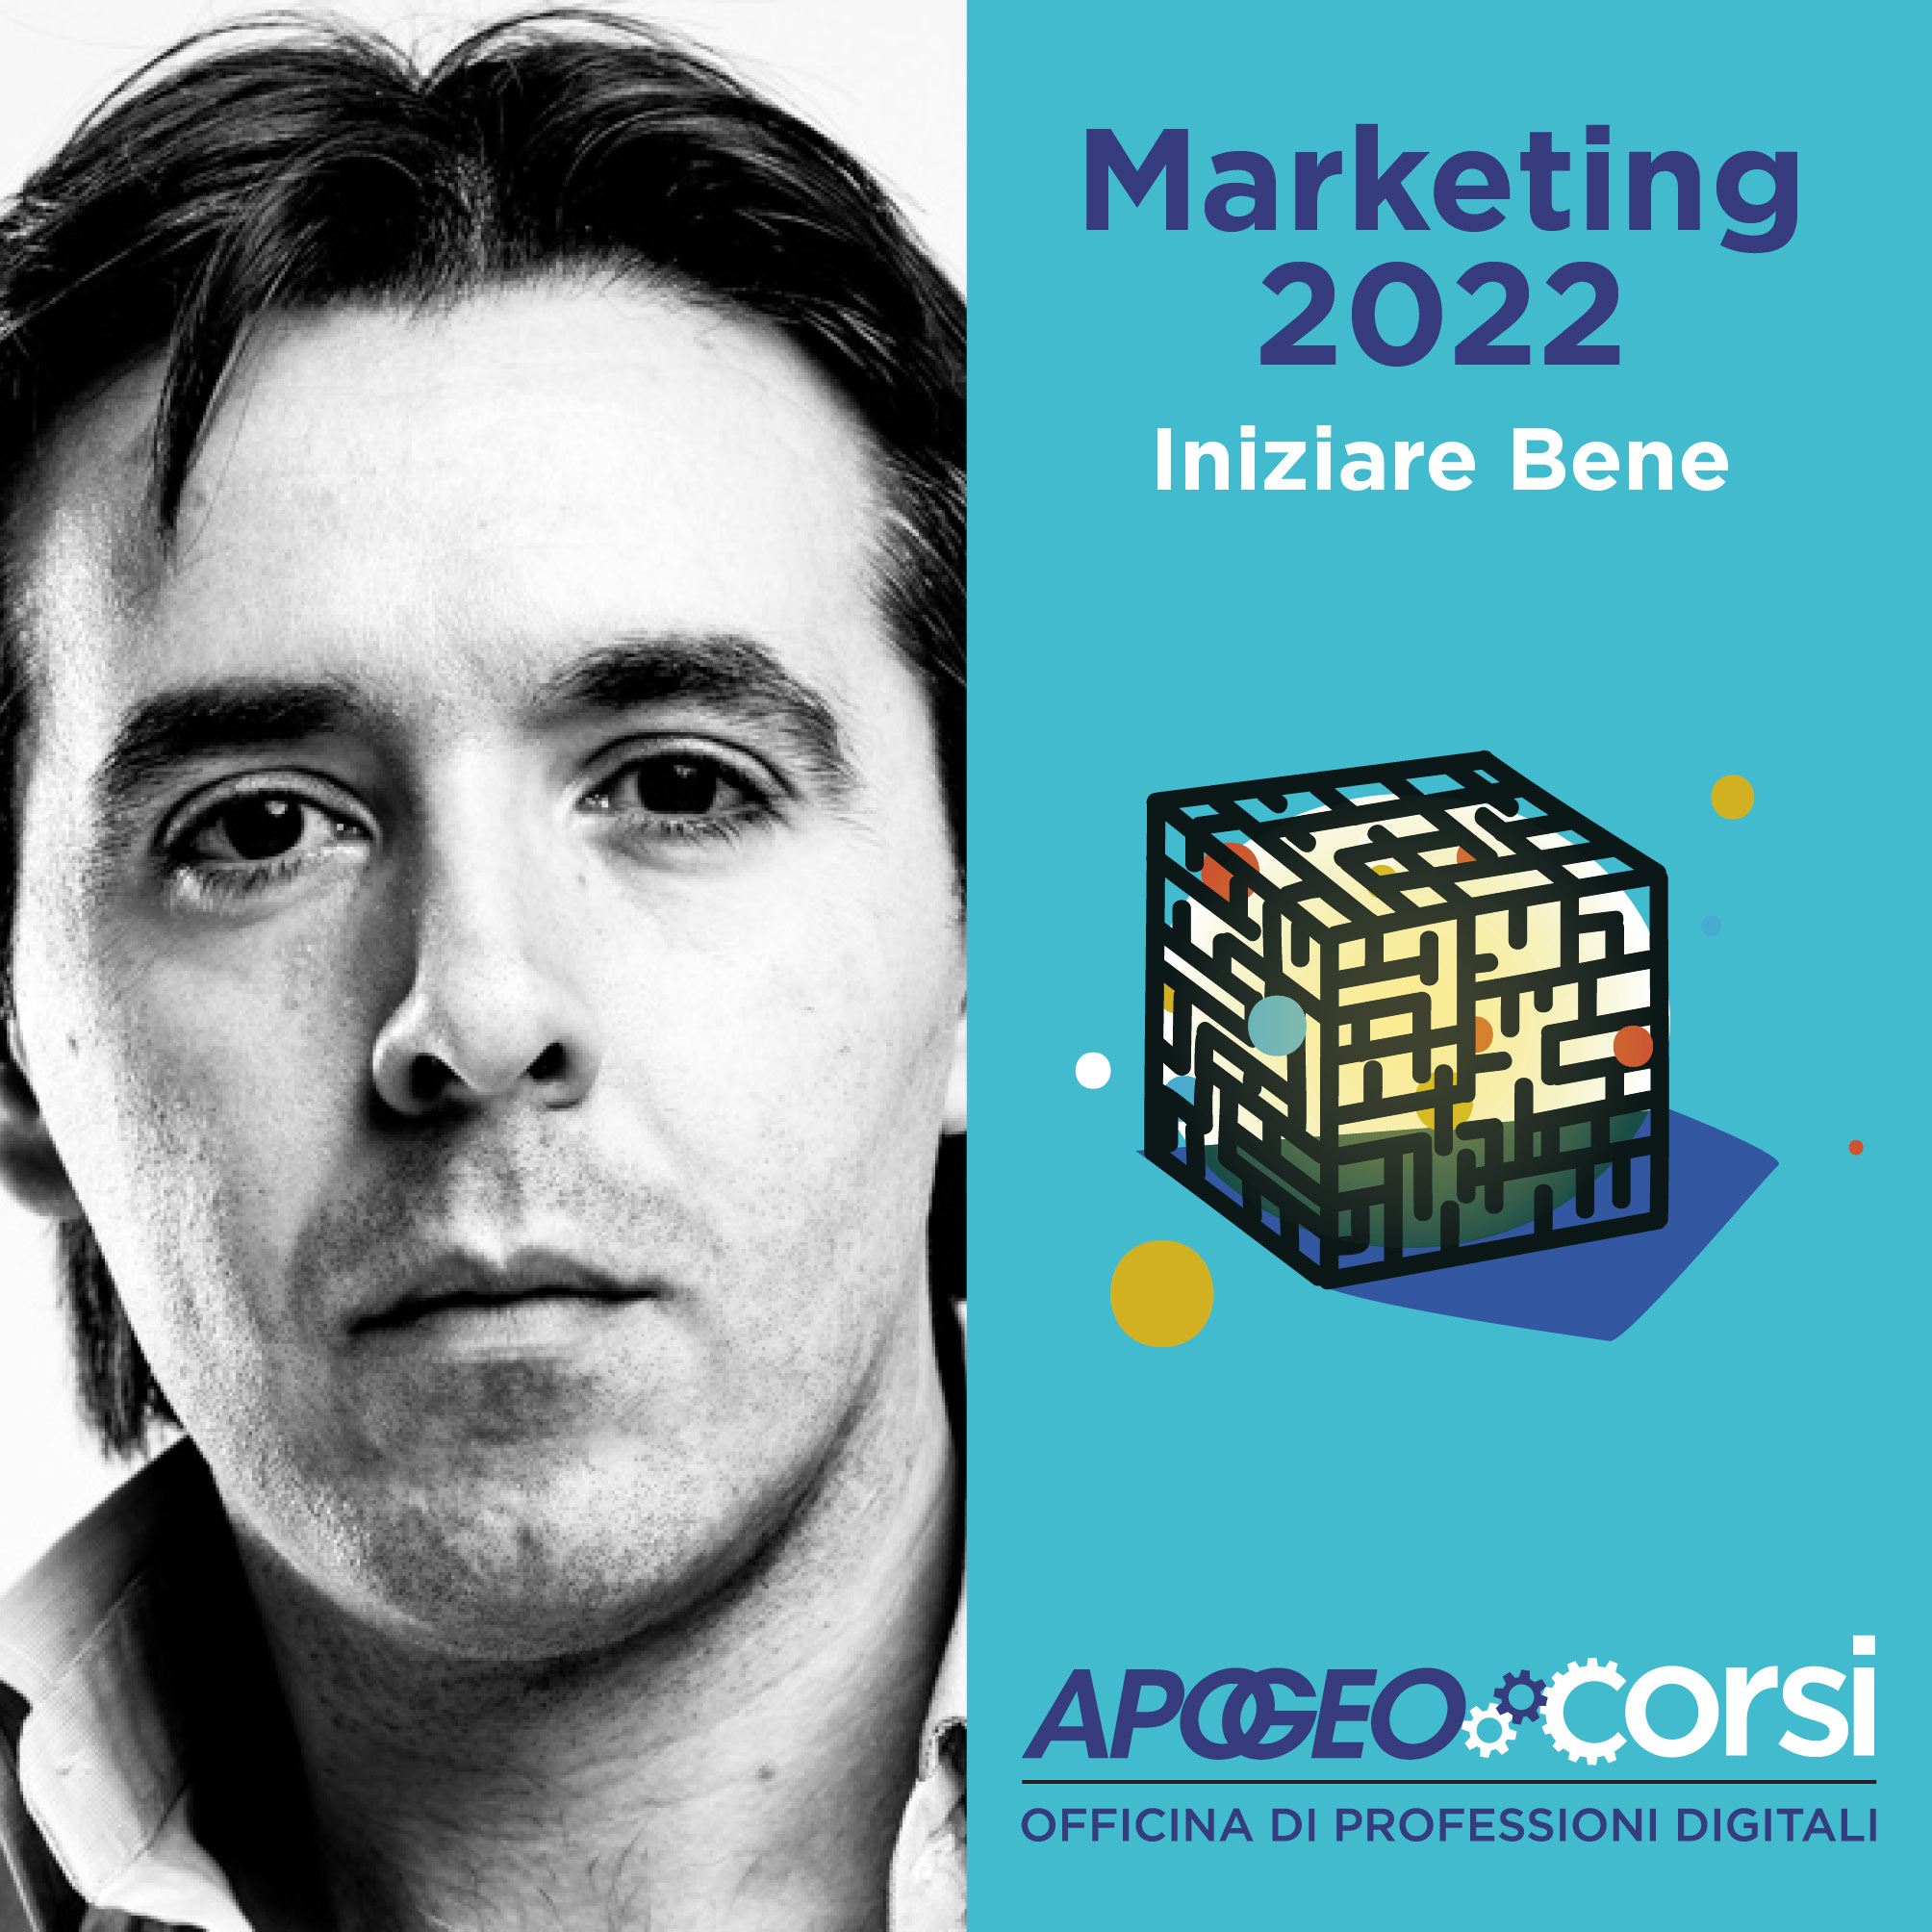 Marketing 2022 - Iniziare bene, con Vincenzo Cosenza